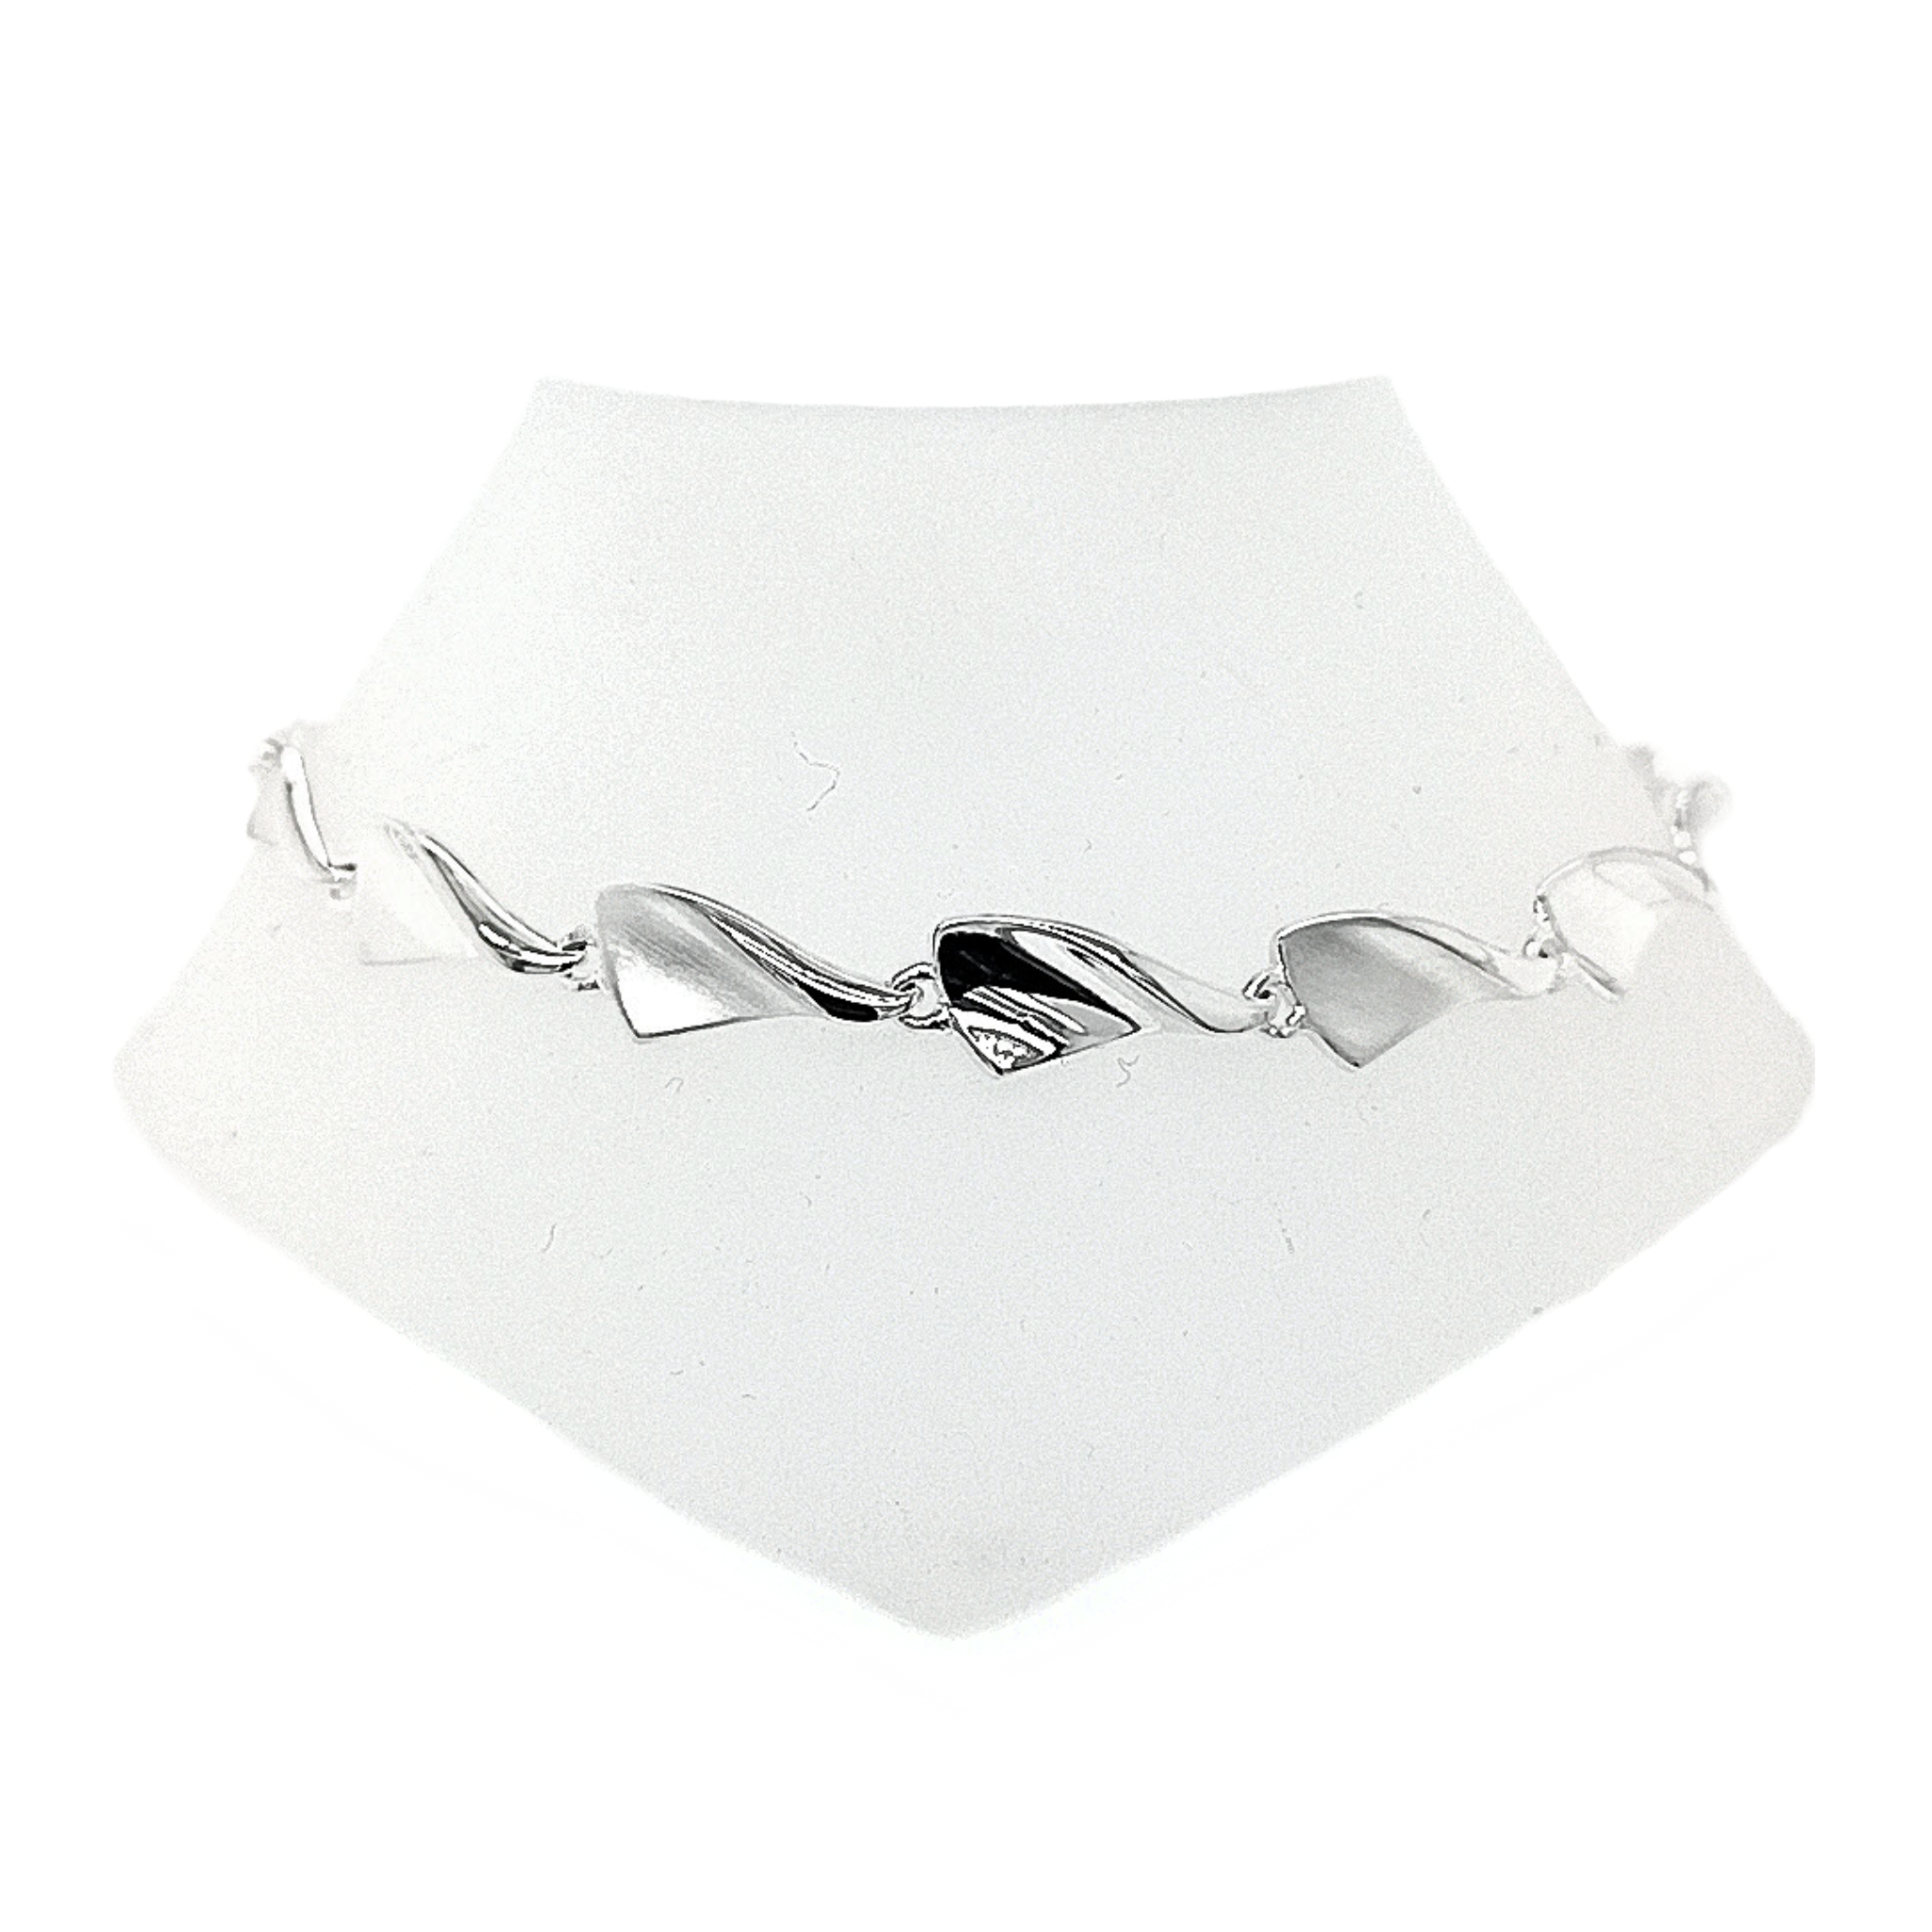 Silver Mouchoir Bracelet